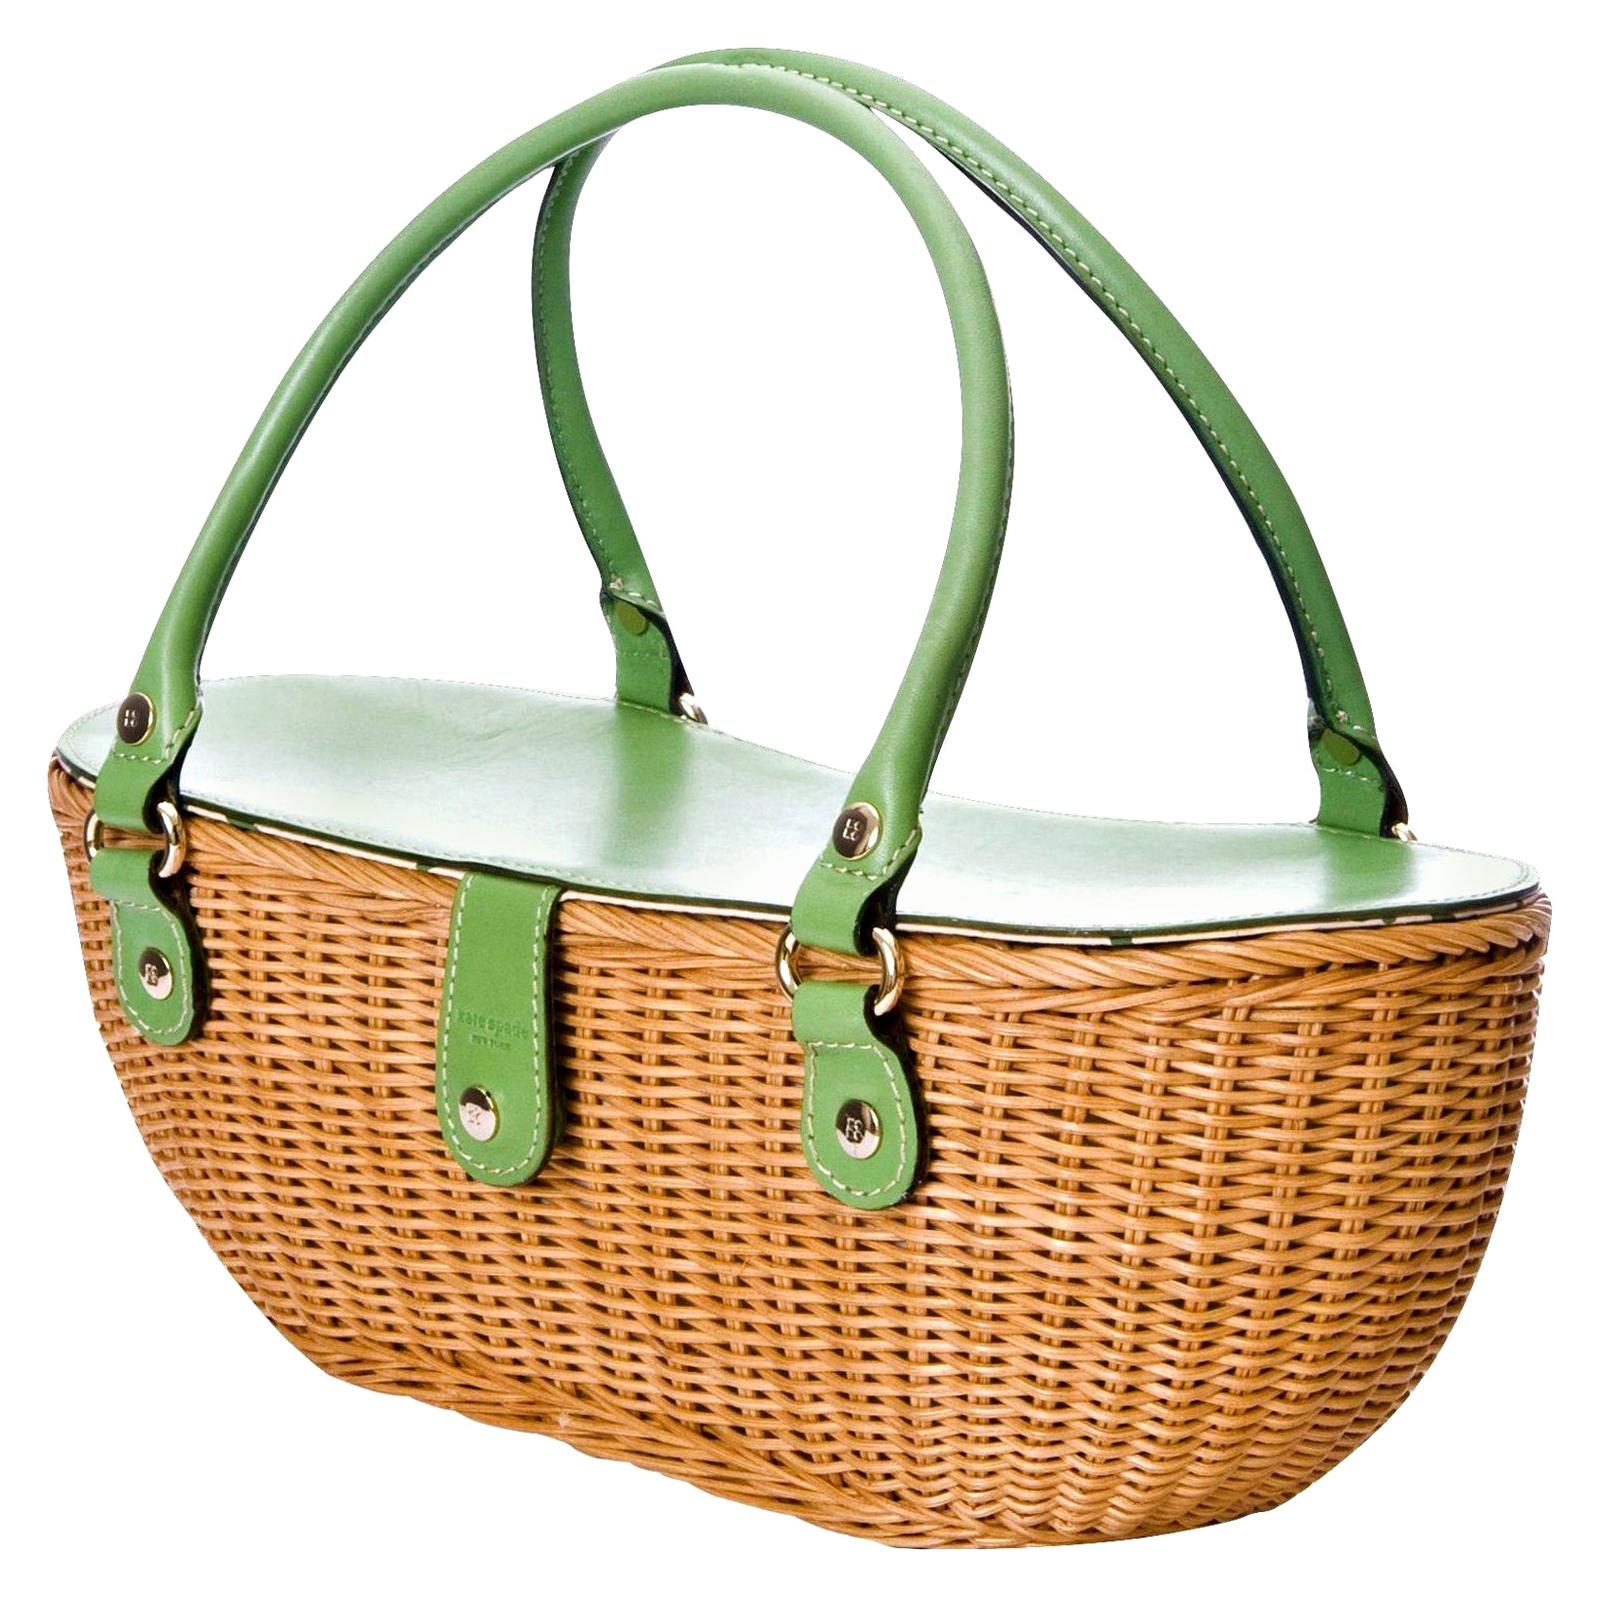 New Kate Spade Rare Collectible Spring 2005 Green Wicker Basket Bag 